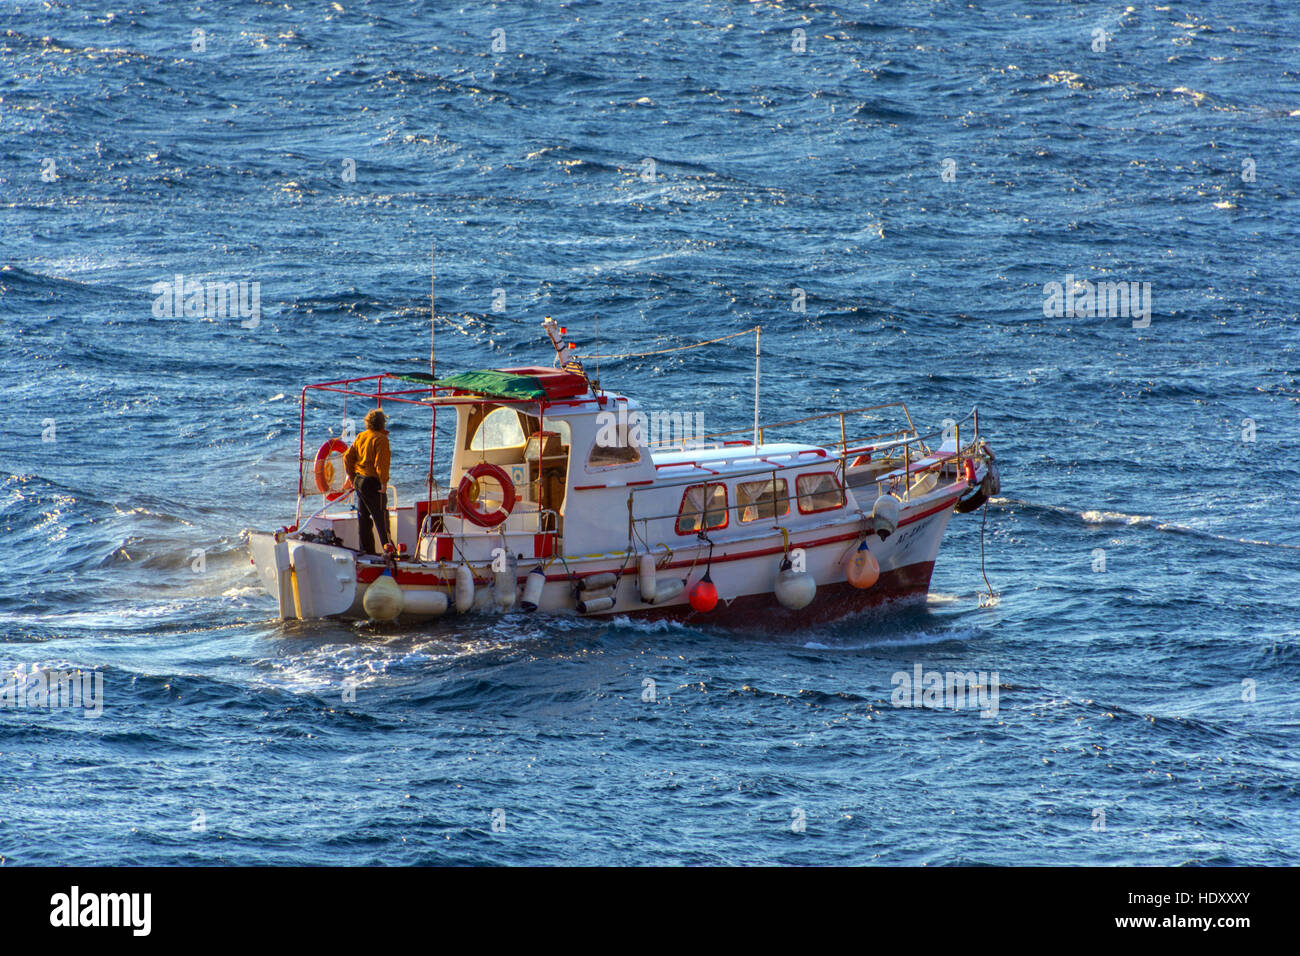 Taxi-barco griego pequeño ferry con Stormy weather, mares picados Foto de stock